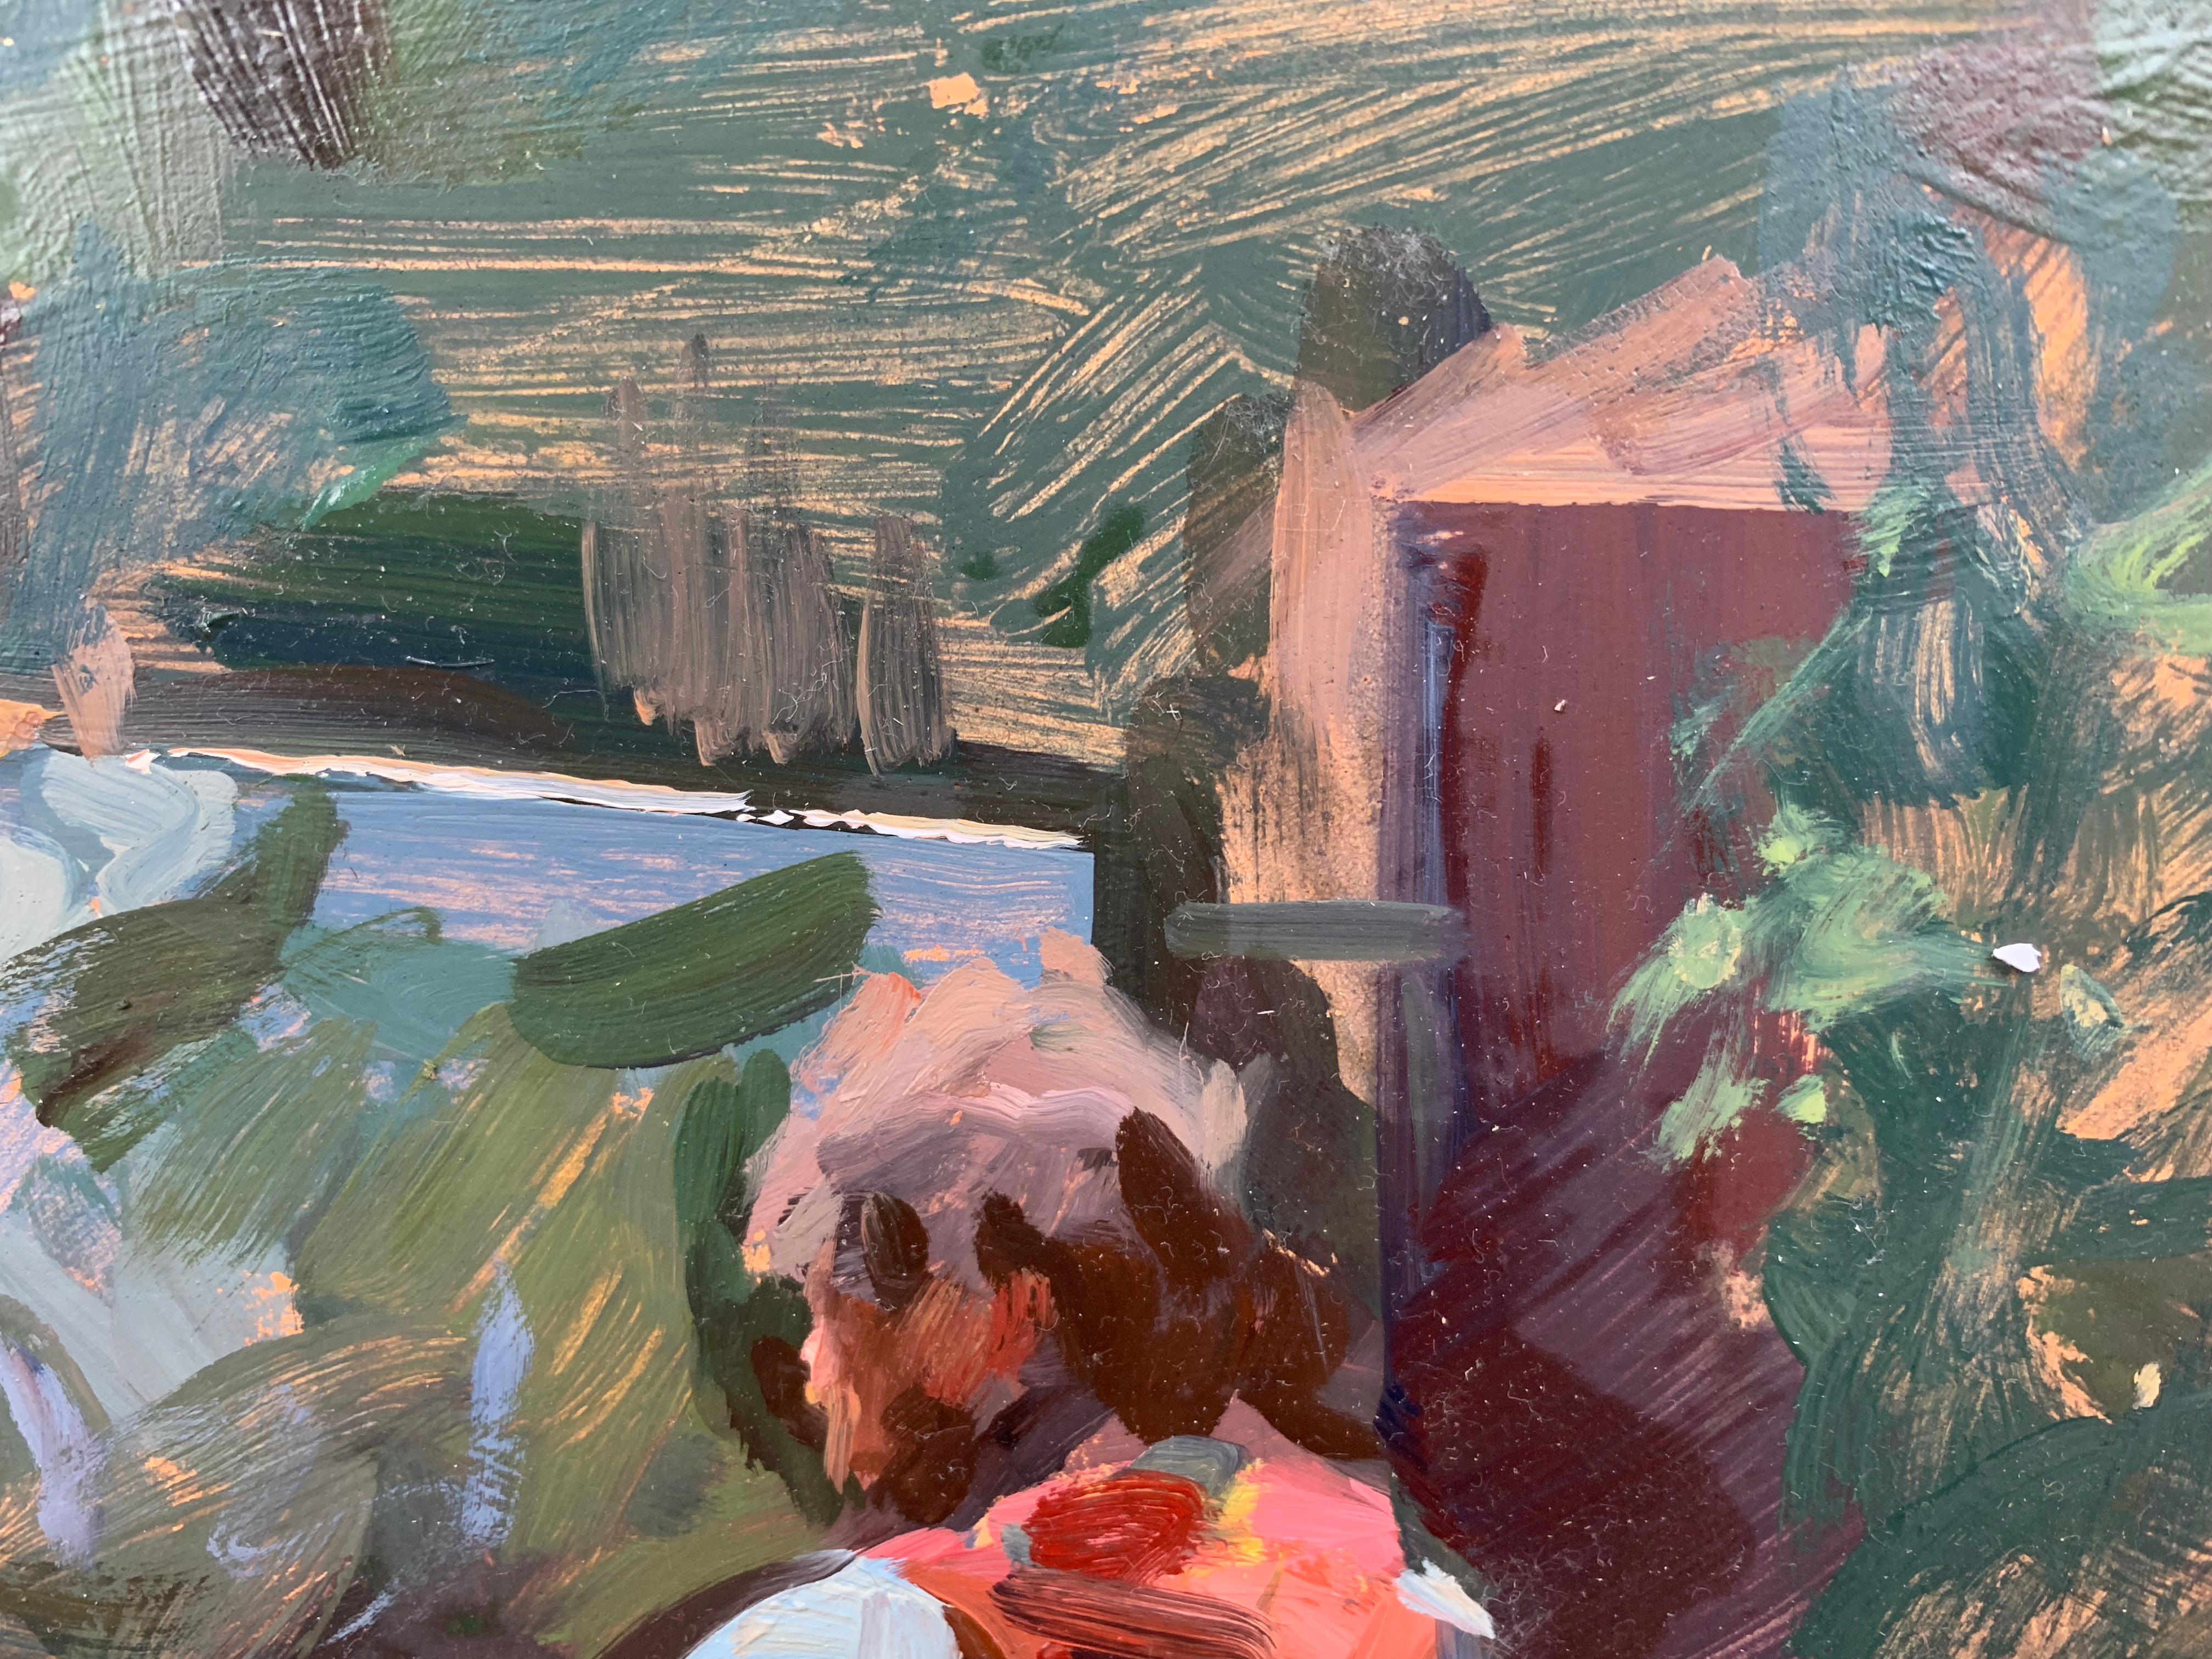 Ein Pleinair-Gemälde von einem Pleinair-Maler! Ein impressionistisches Ölgemälde eines befreundeten Künstlers, Ben Fenske, der im Freien malt. In Italien gemalt, fängt der amerikanische Realist Marc Dalessio den Künstler Ben Fenske von der Grenning